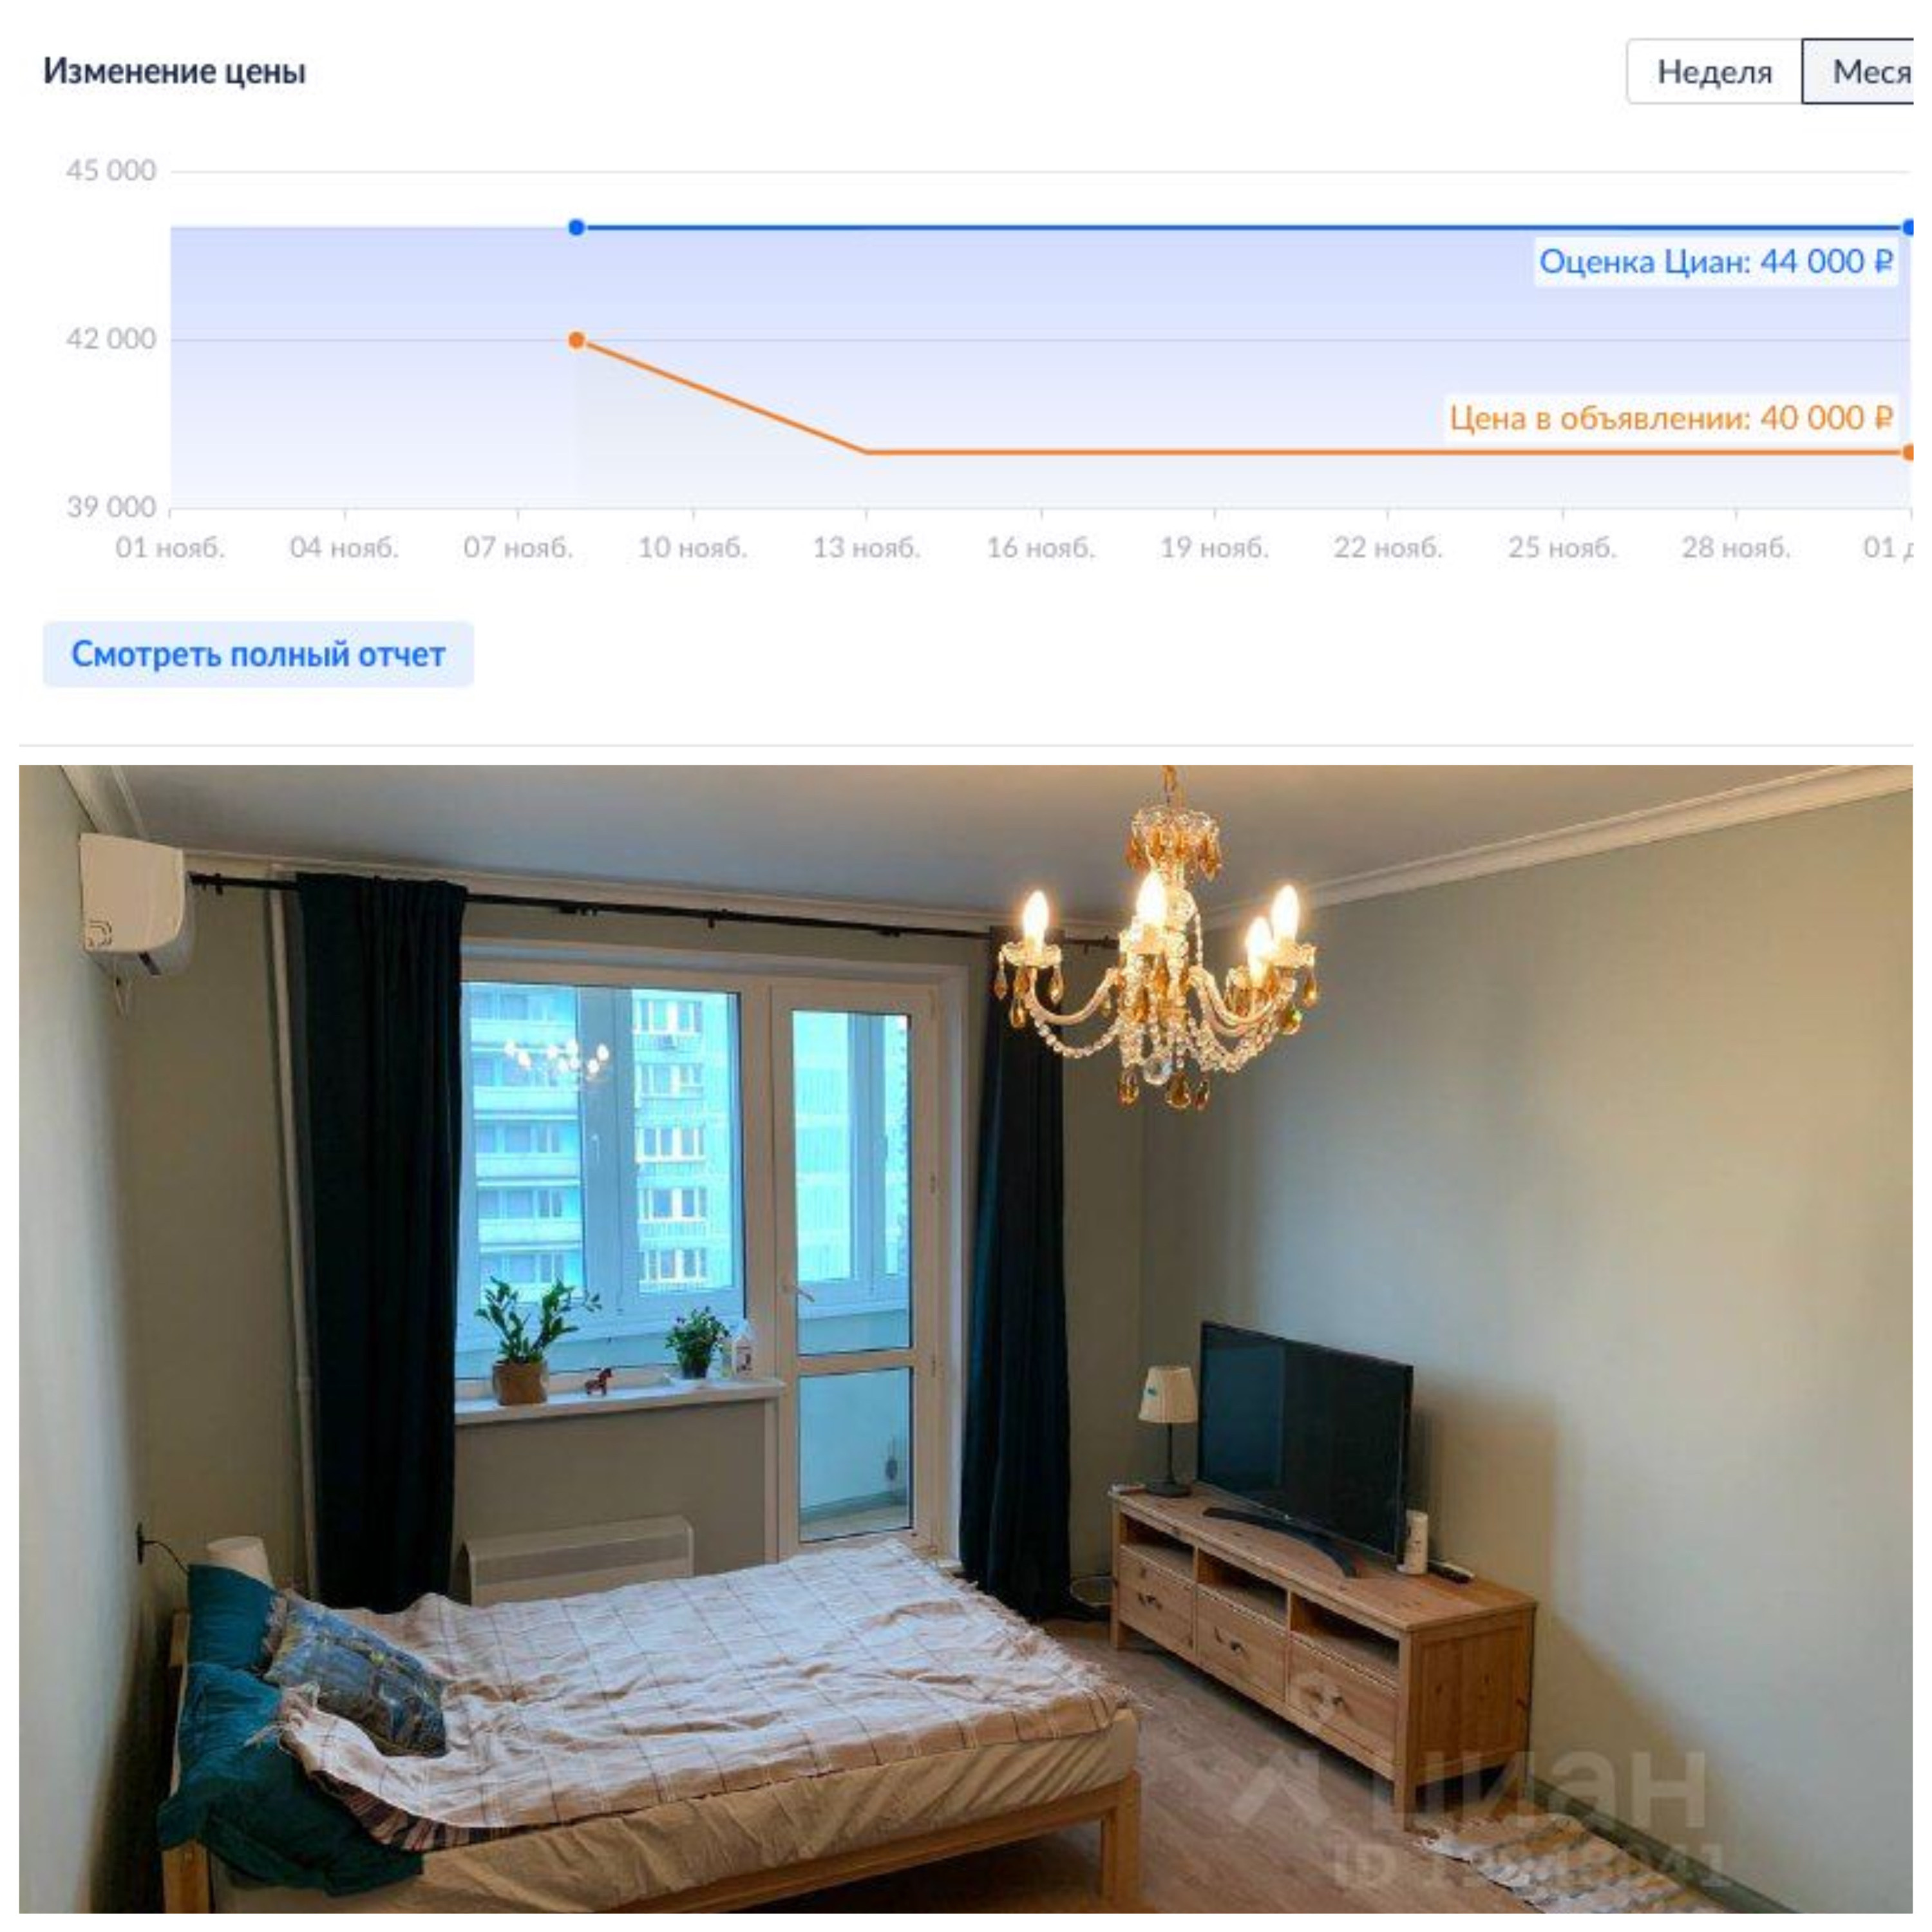 Недвижимость дешевеет в Москве.